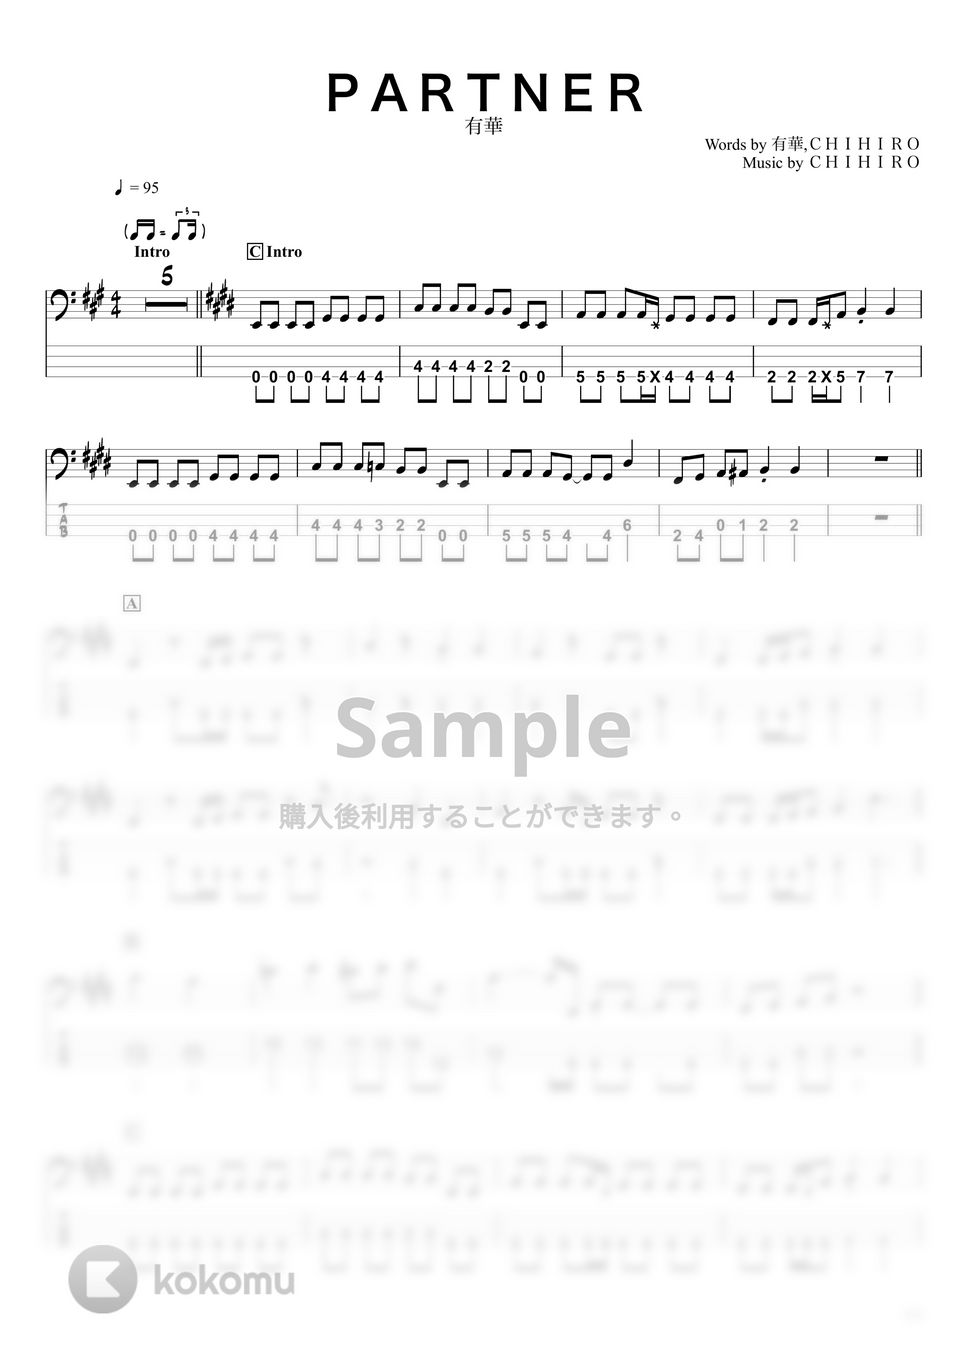 有華 - Partner (ベースTAB譜☆4弦ベース対応) by swbass